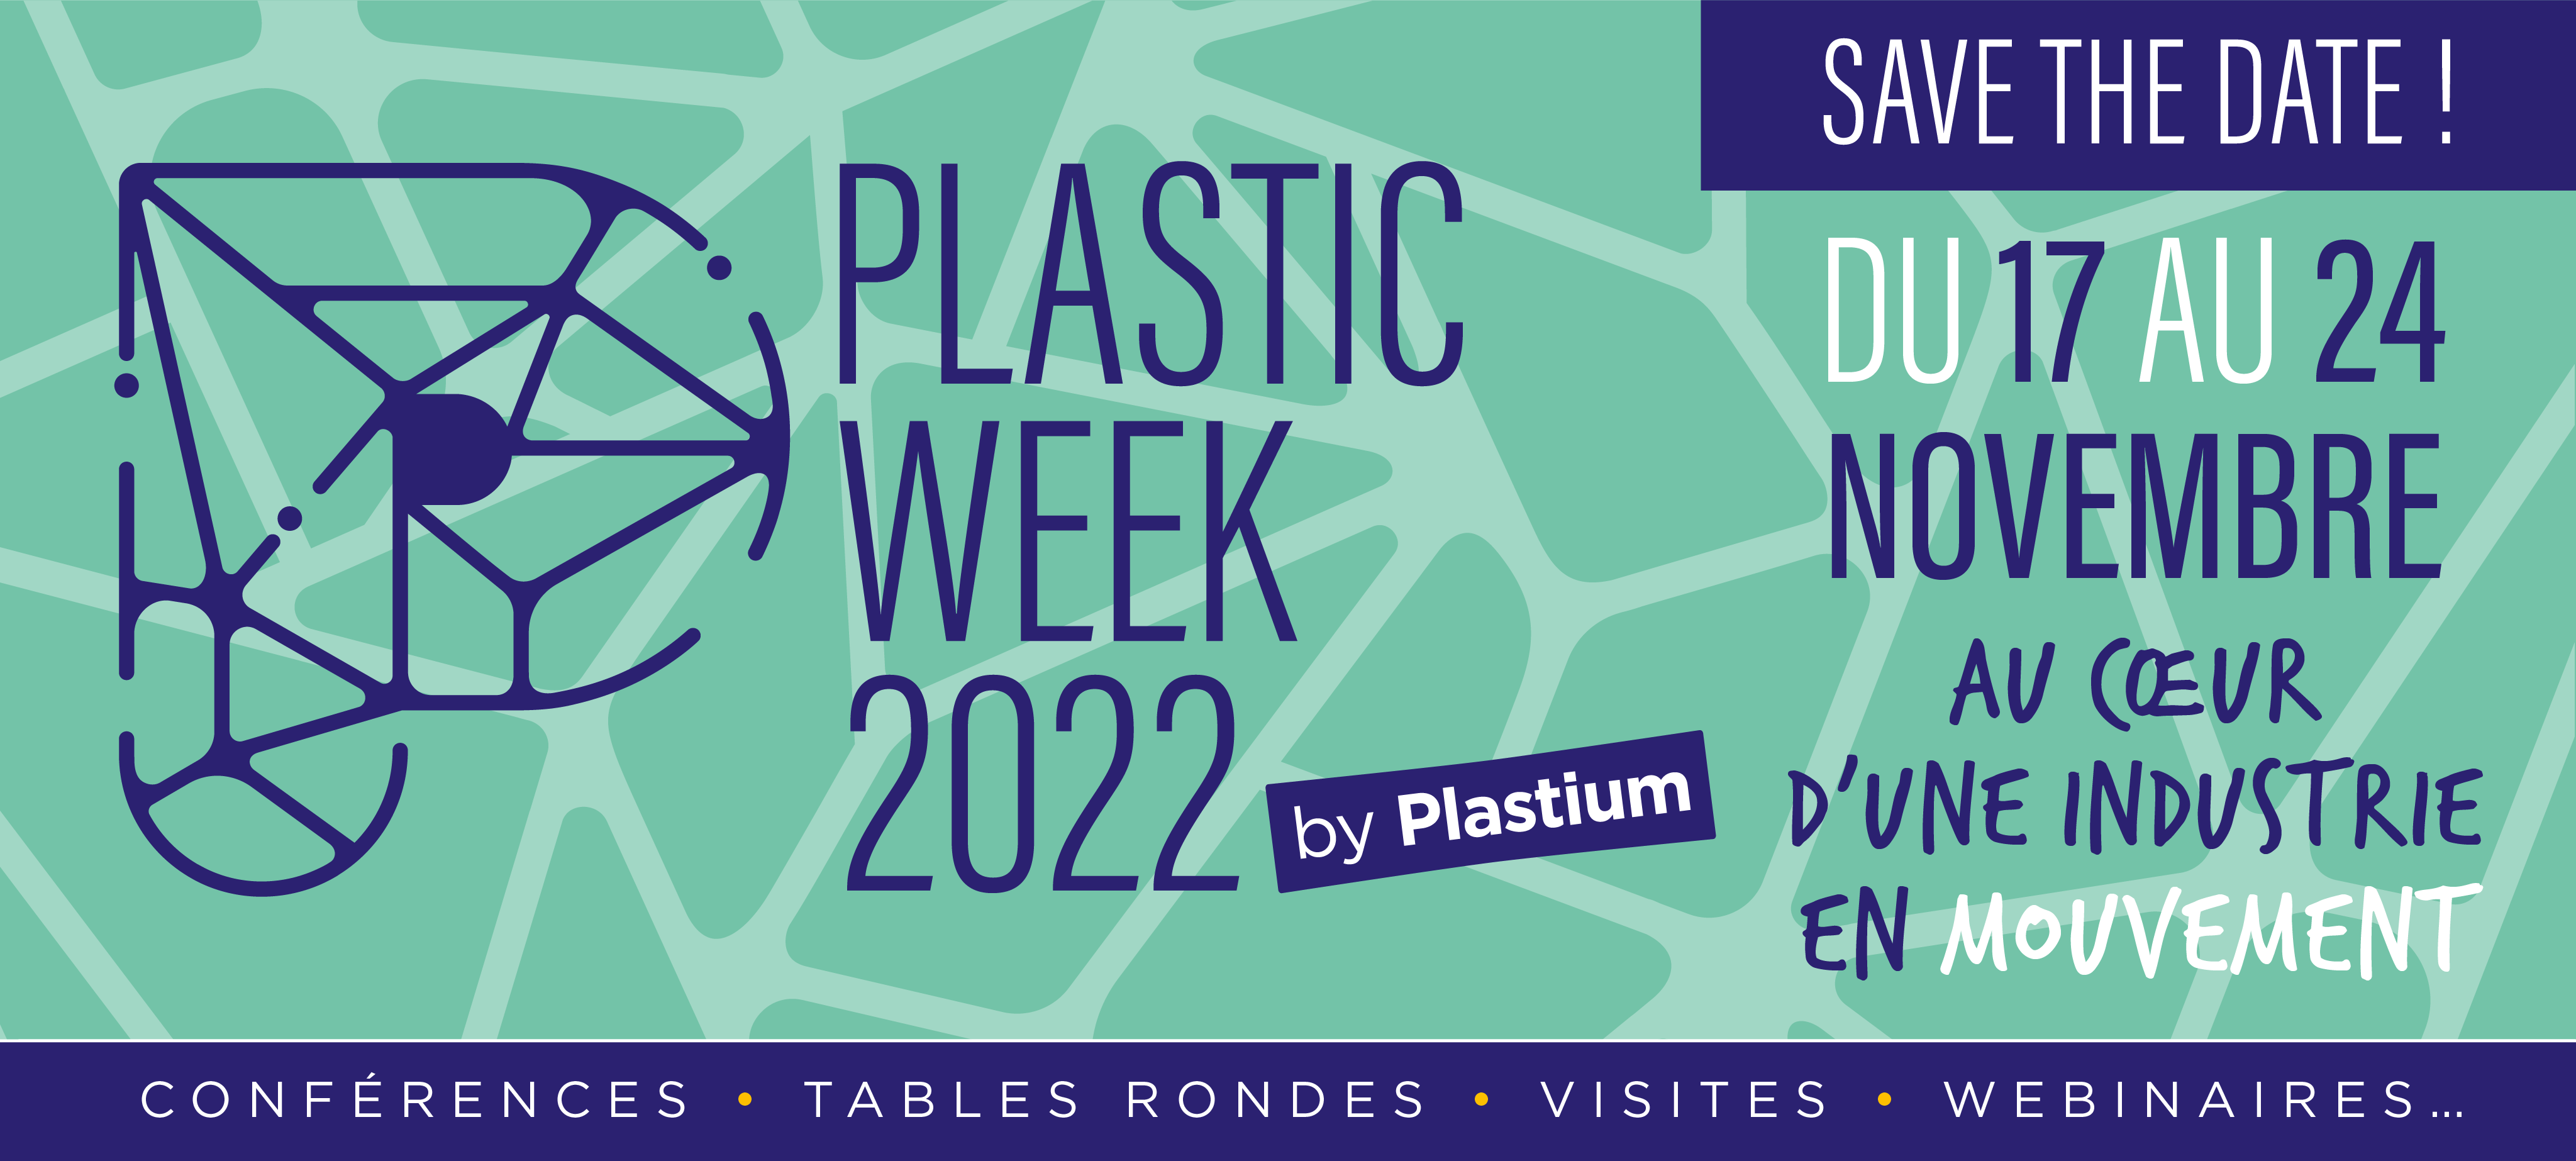 Plastic Week